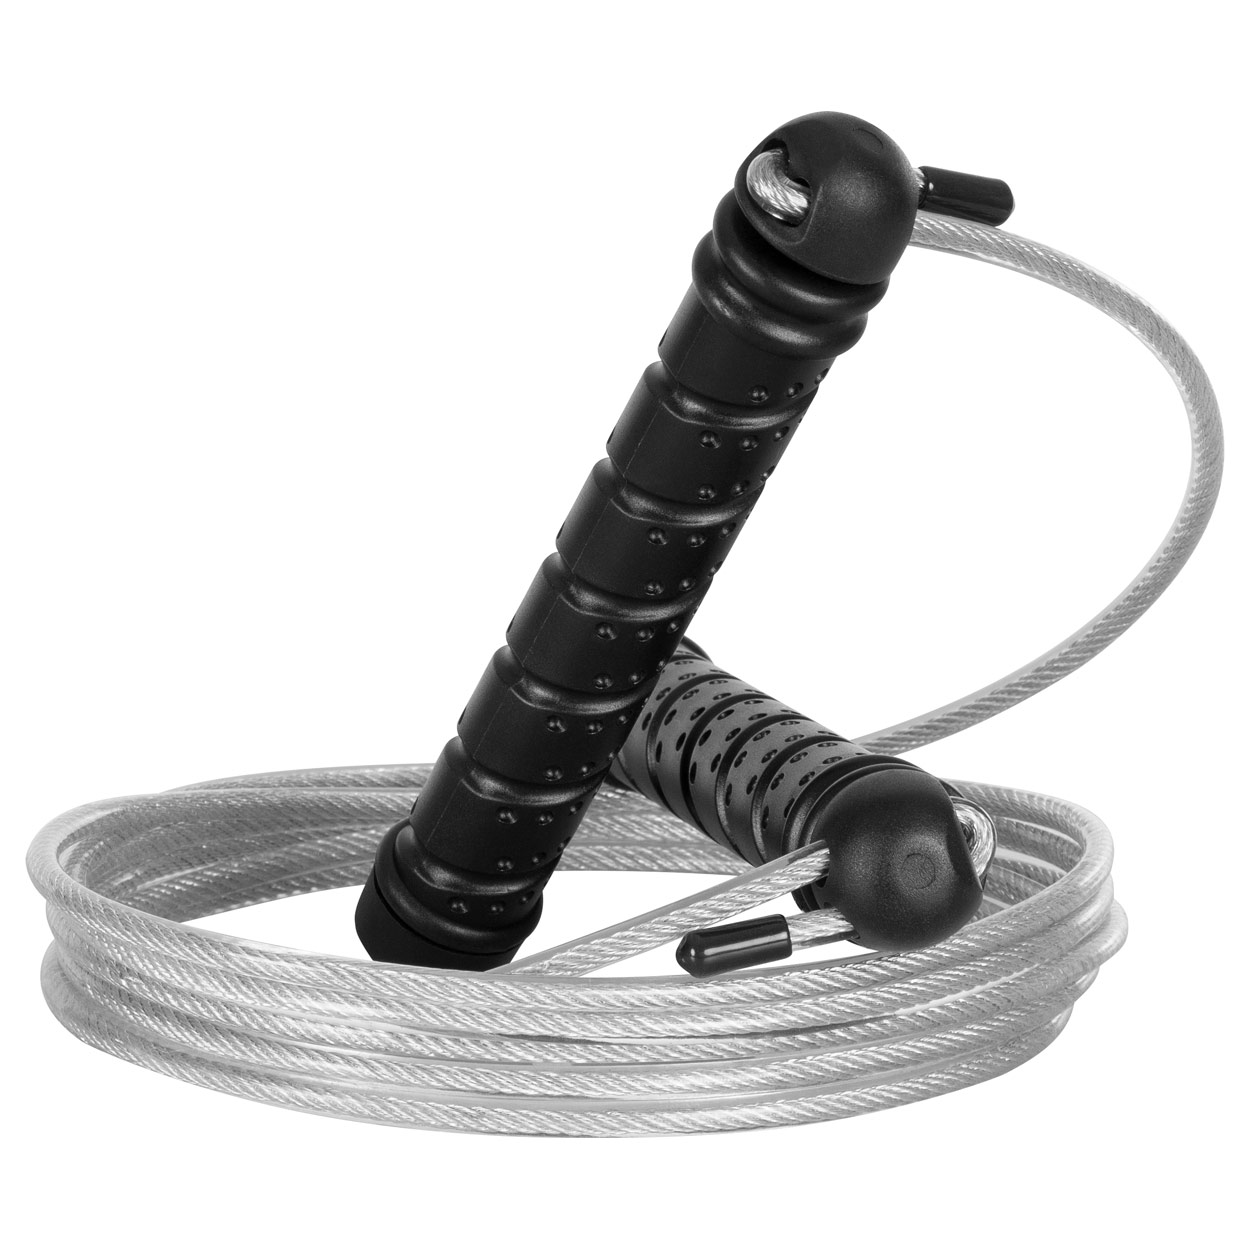 verstellbar, inkl. 270 kaufen Stahl-Springseil Sport-Tec Rope Skip online günstig 2 cm Gewichten, |